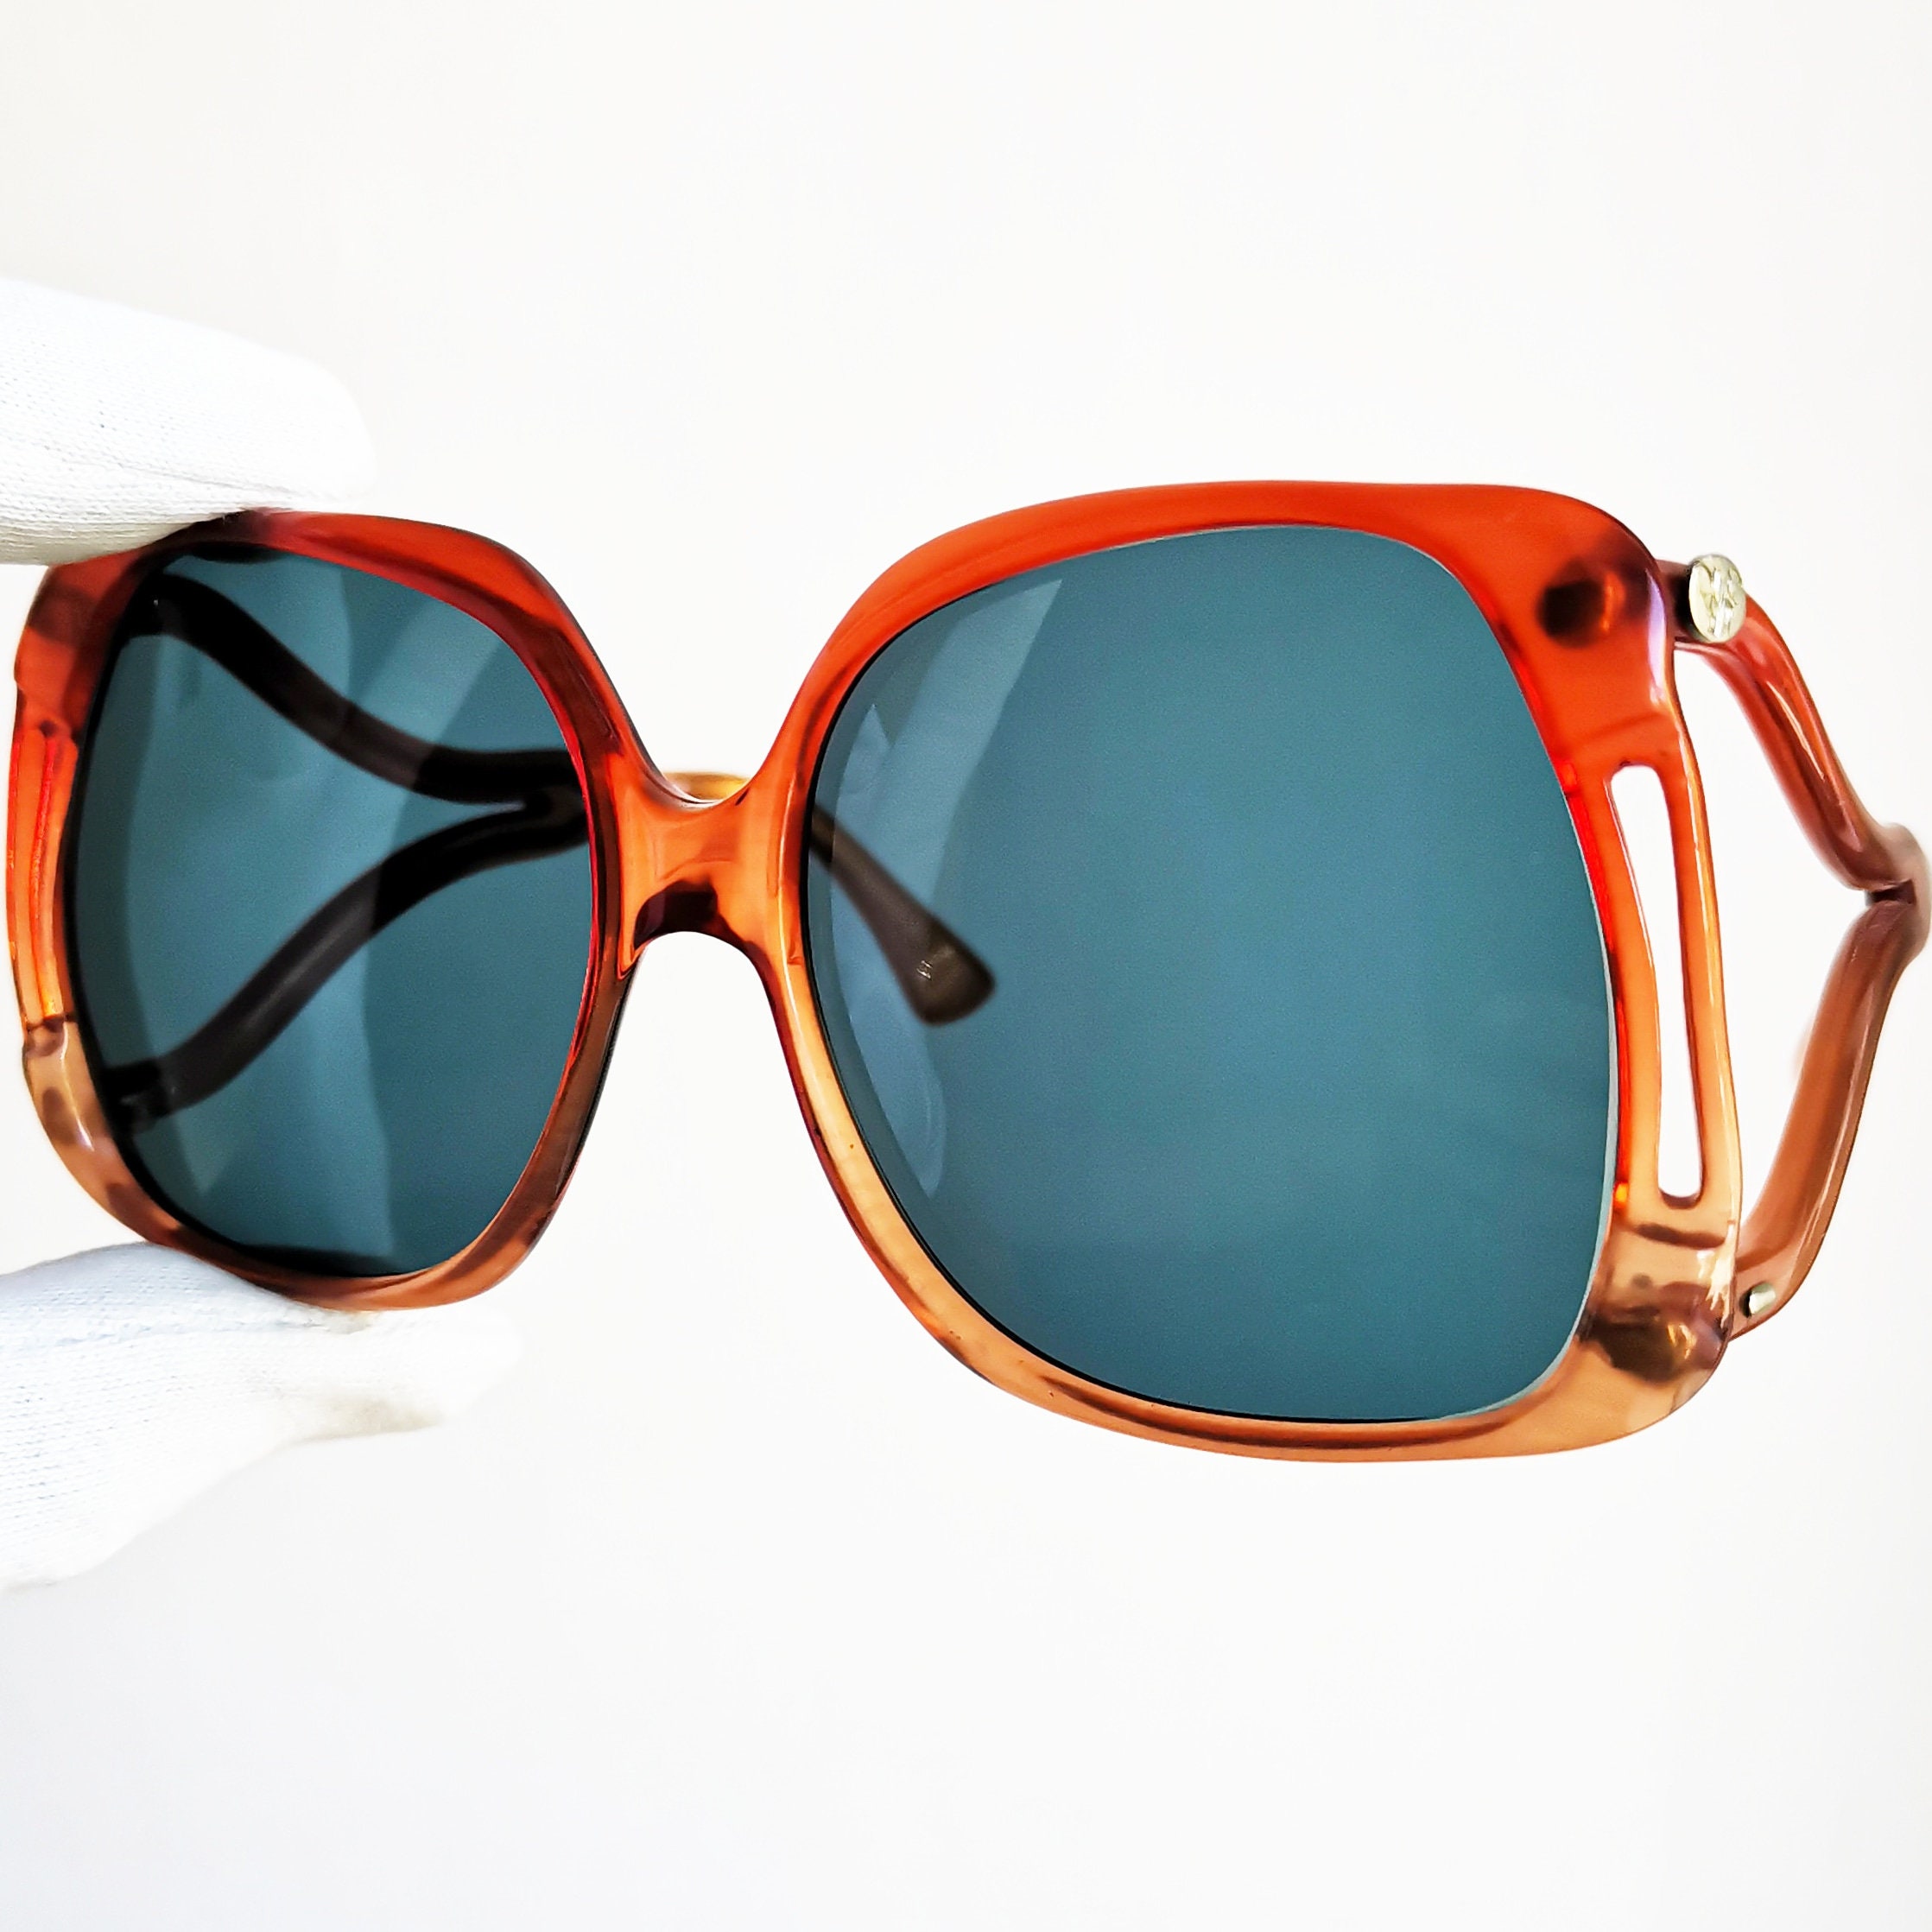 DIANE VON FURSTENBERG Vintage Sunglasses Rare Red Square | Etsy